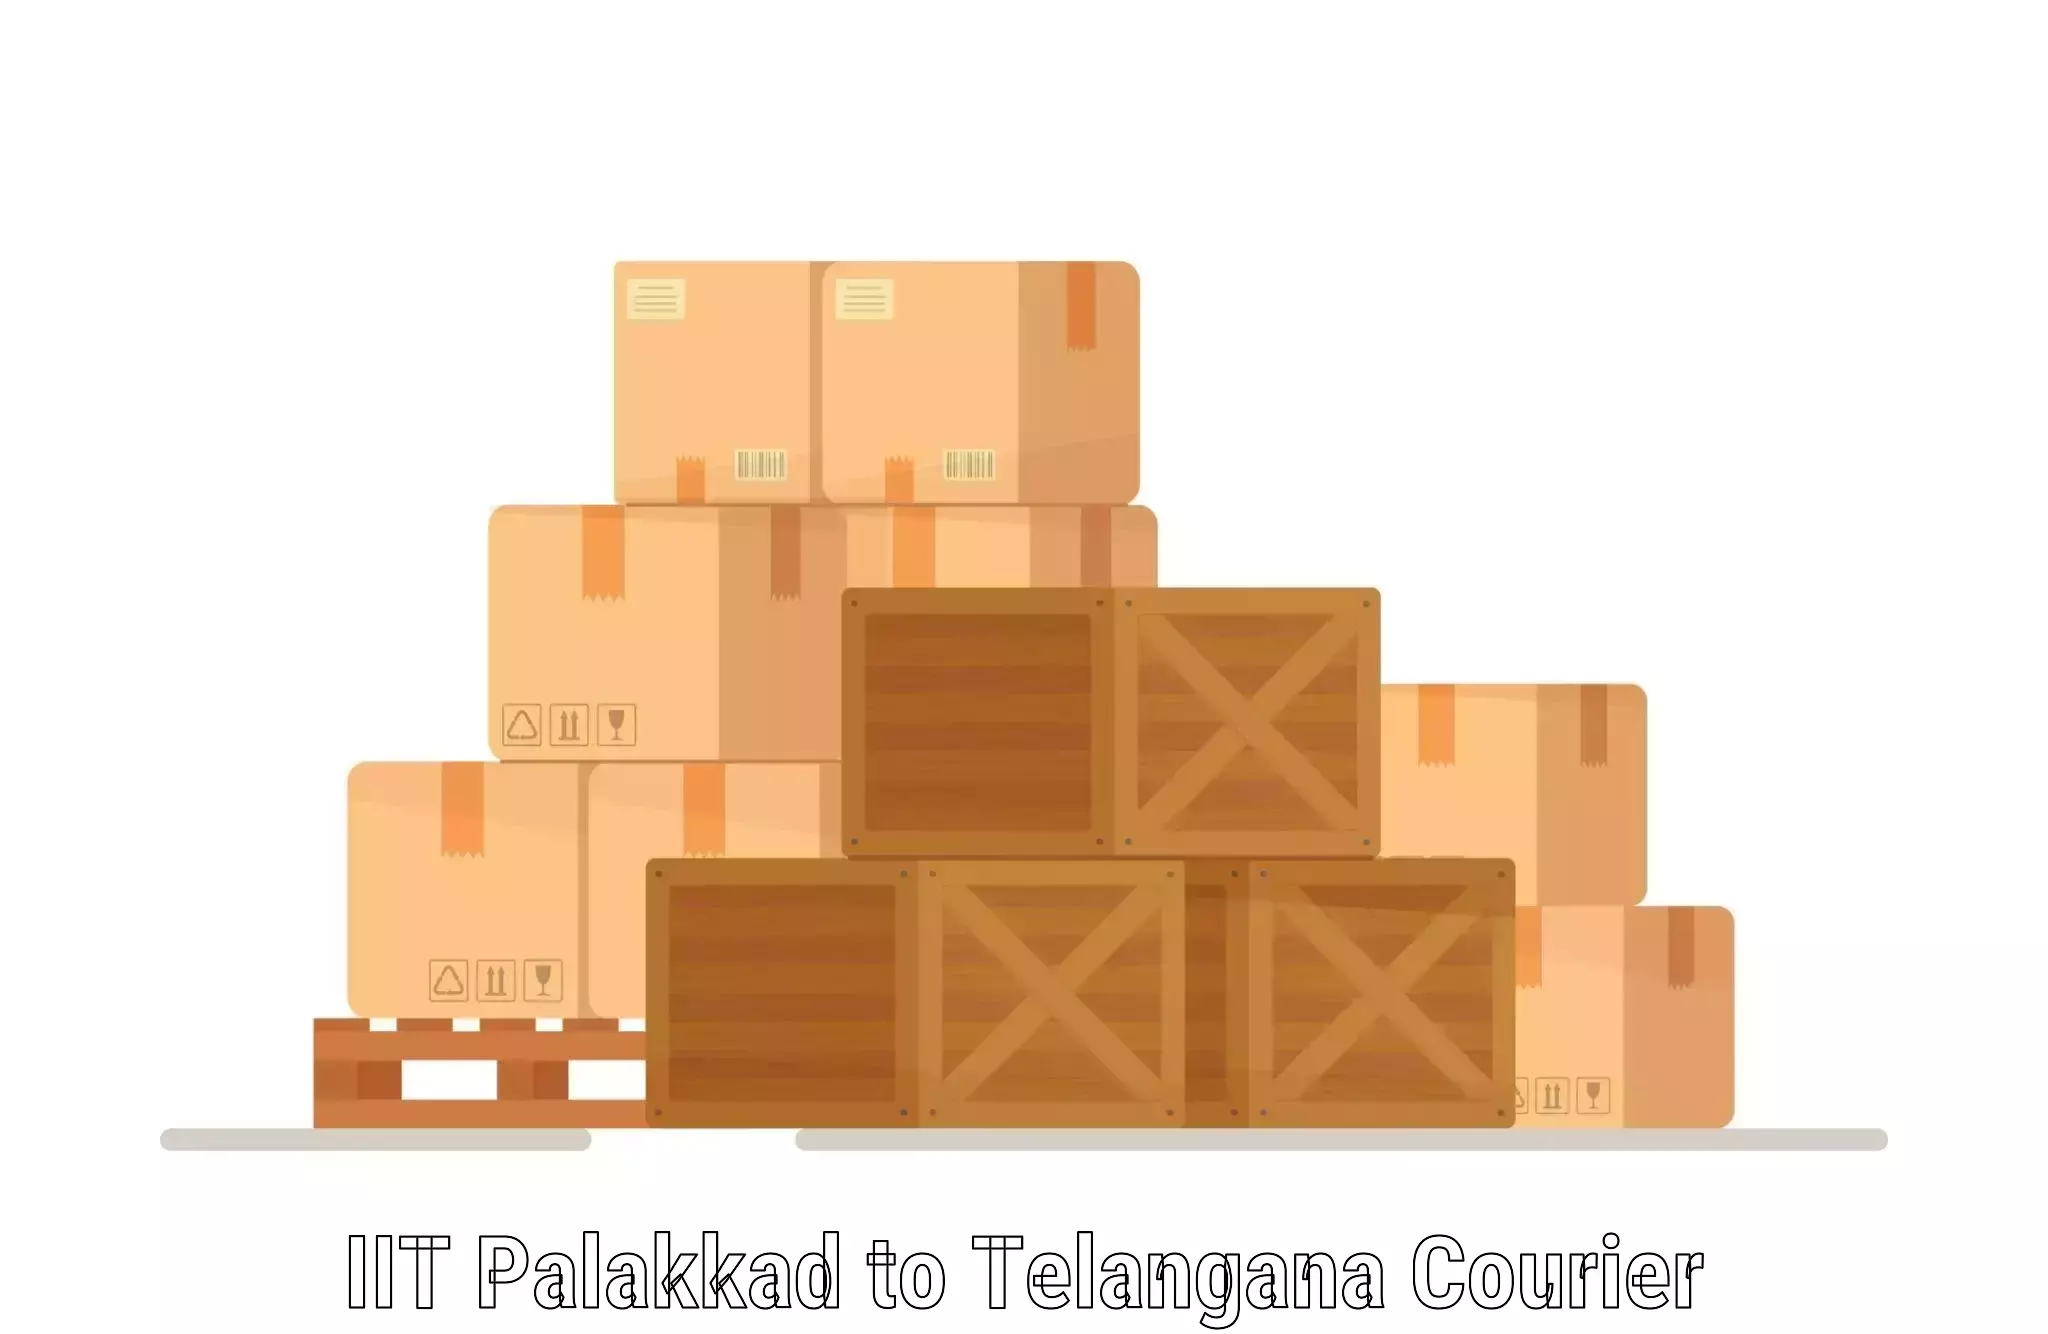 Modern courier technology IIT Palakkad to Medak